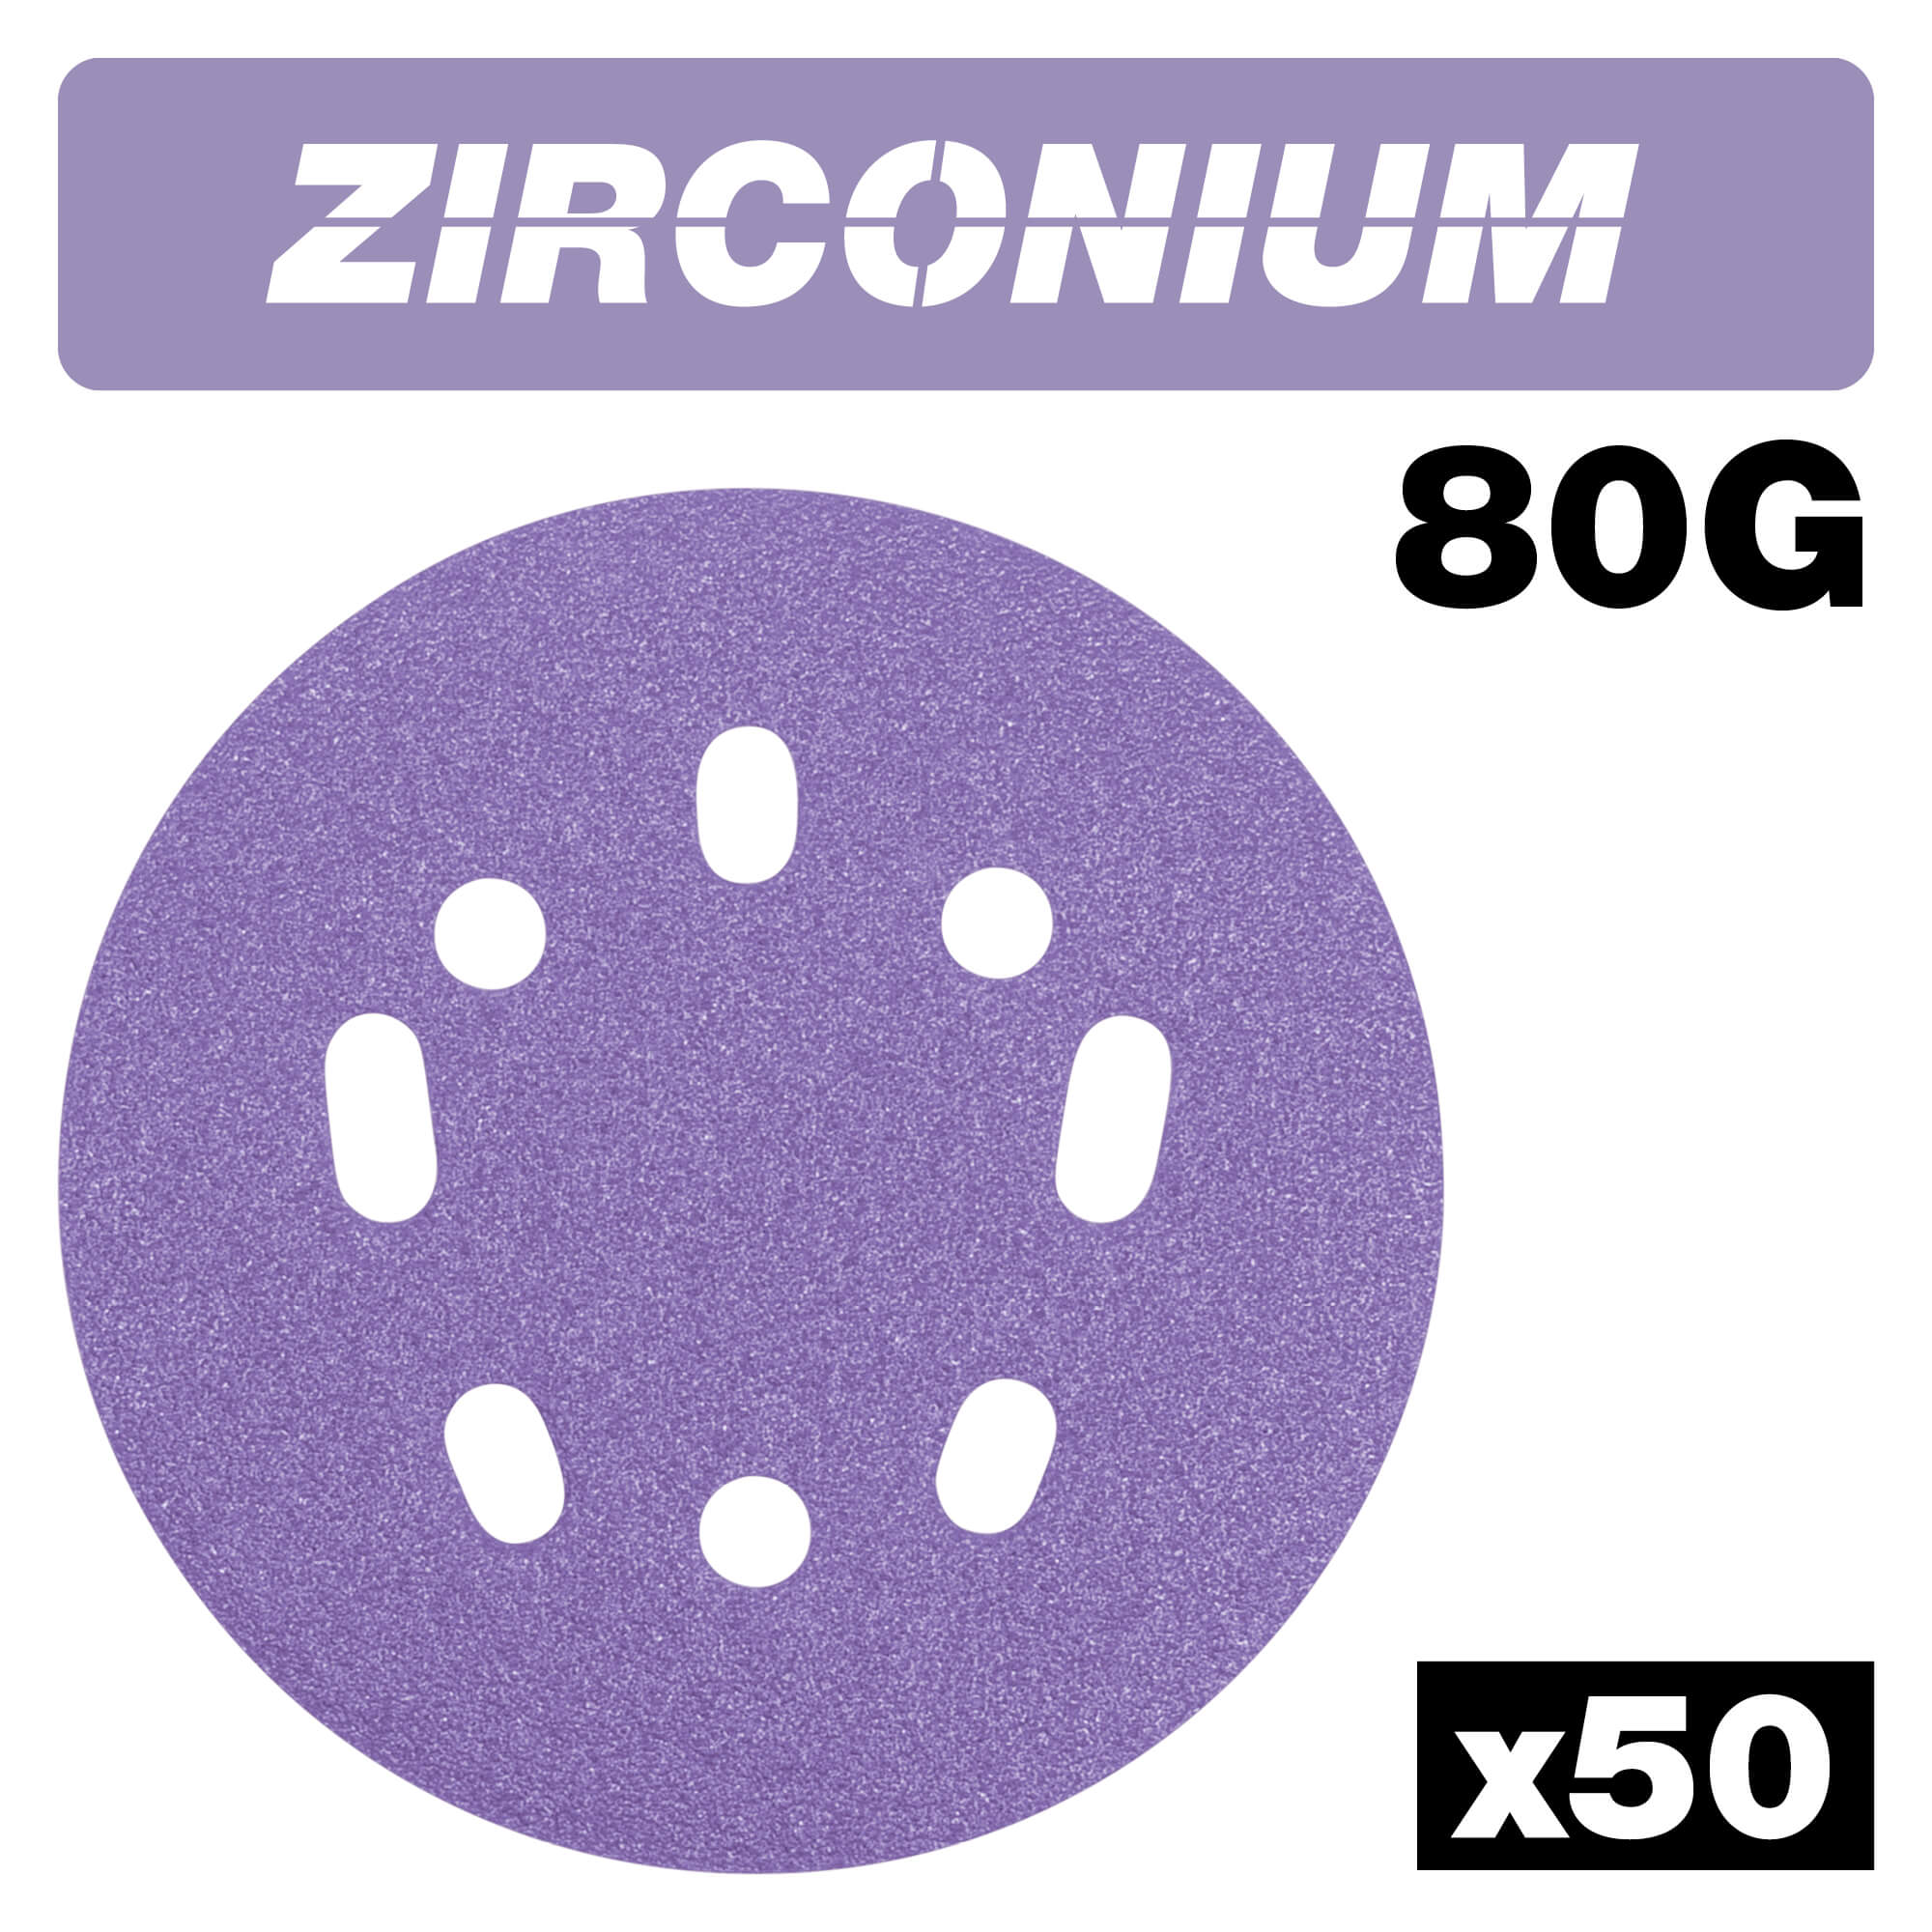 Photo of Trend Zirconium Random Orbital Sanding Disc 125mm 125mm 80g Pack Of 50